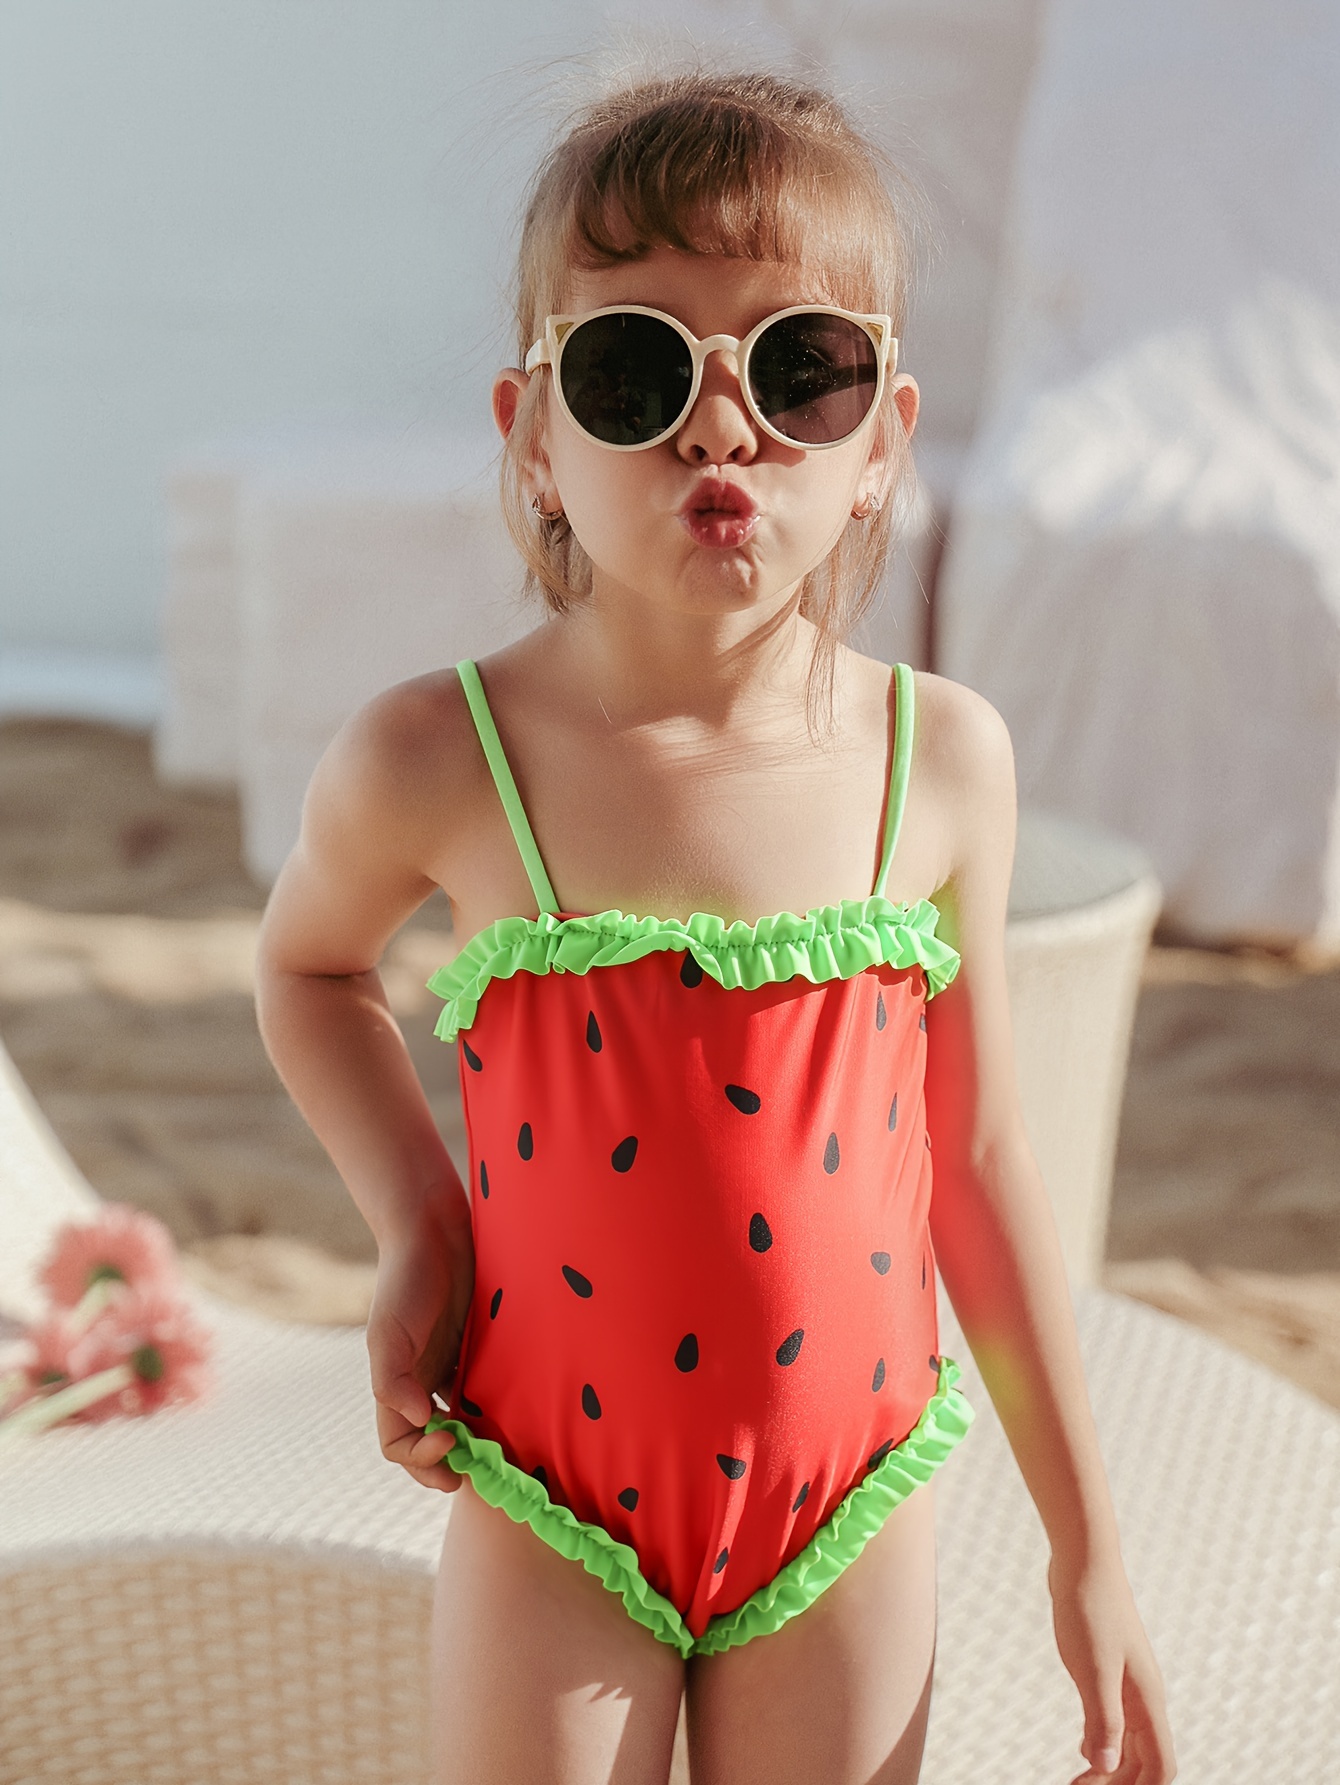 Wassermelone Badeanzug Mädchen - Kostenlose Rückgabe Innerhalb Von